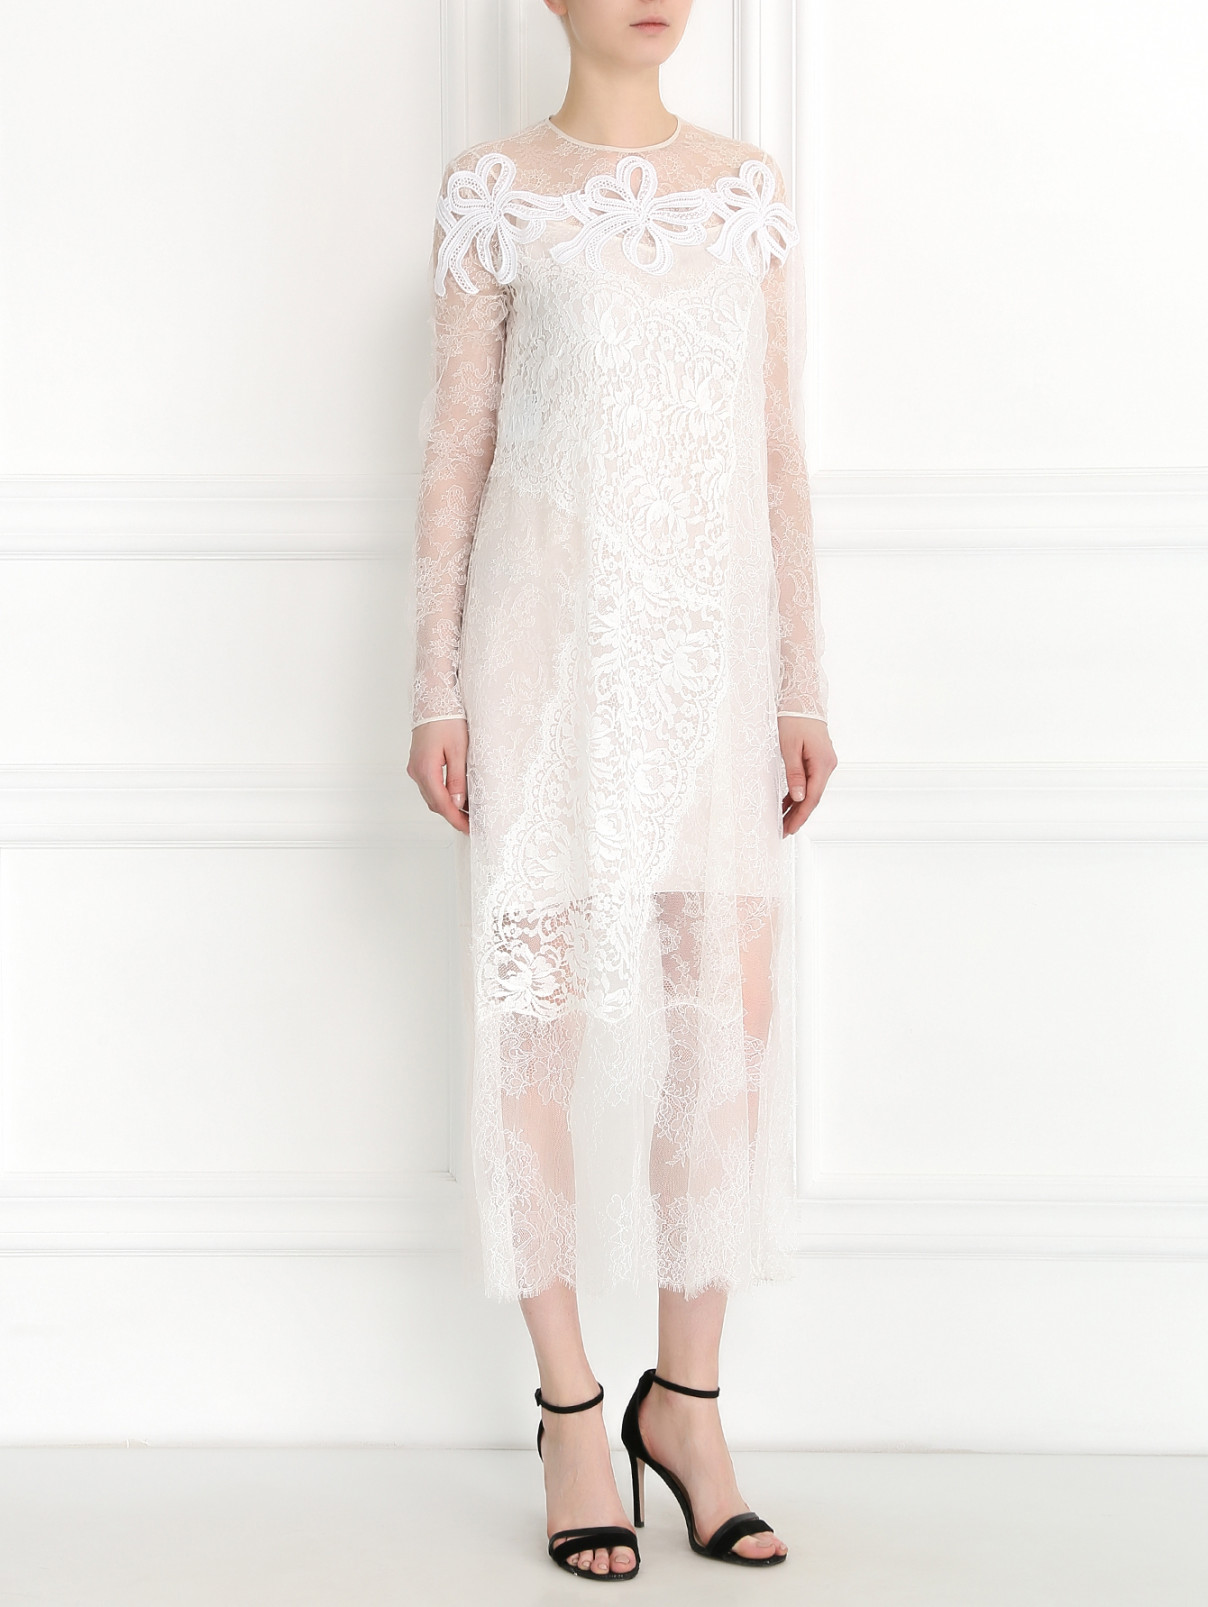 Кружевное платье из шелка и хлопка Rochas  –  Модель Общий вид  – Цвет:  Белый